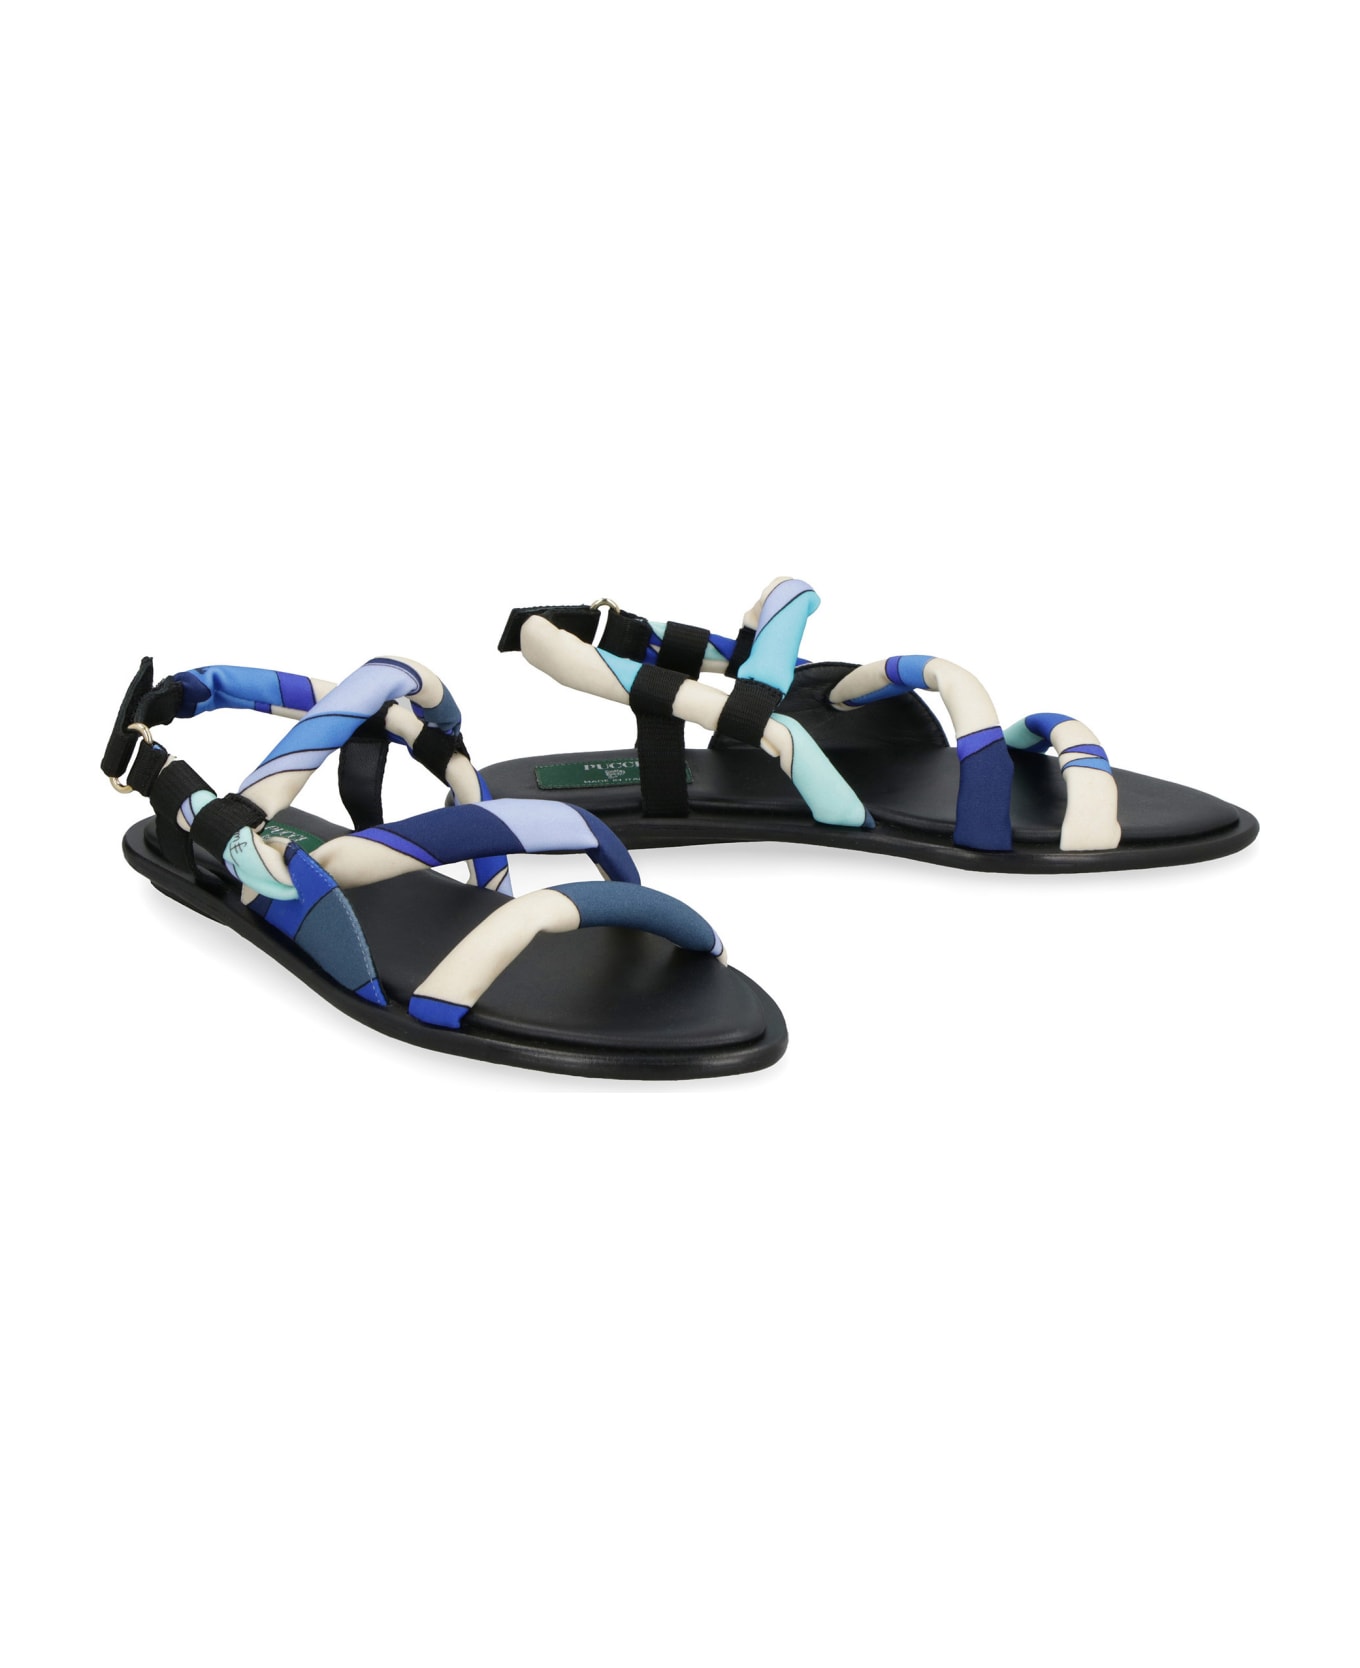 Pucci Lee Flat Sandals - BLU サンダル